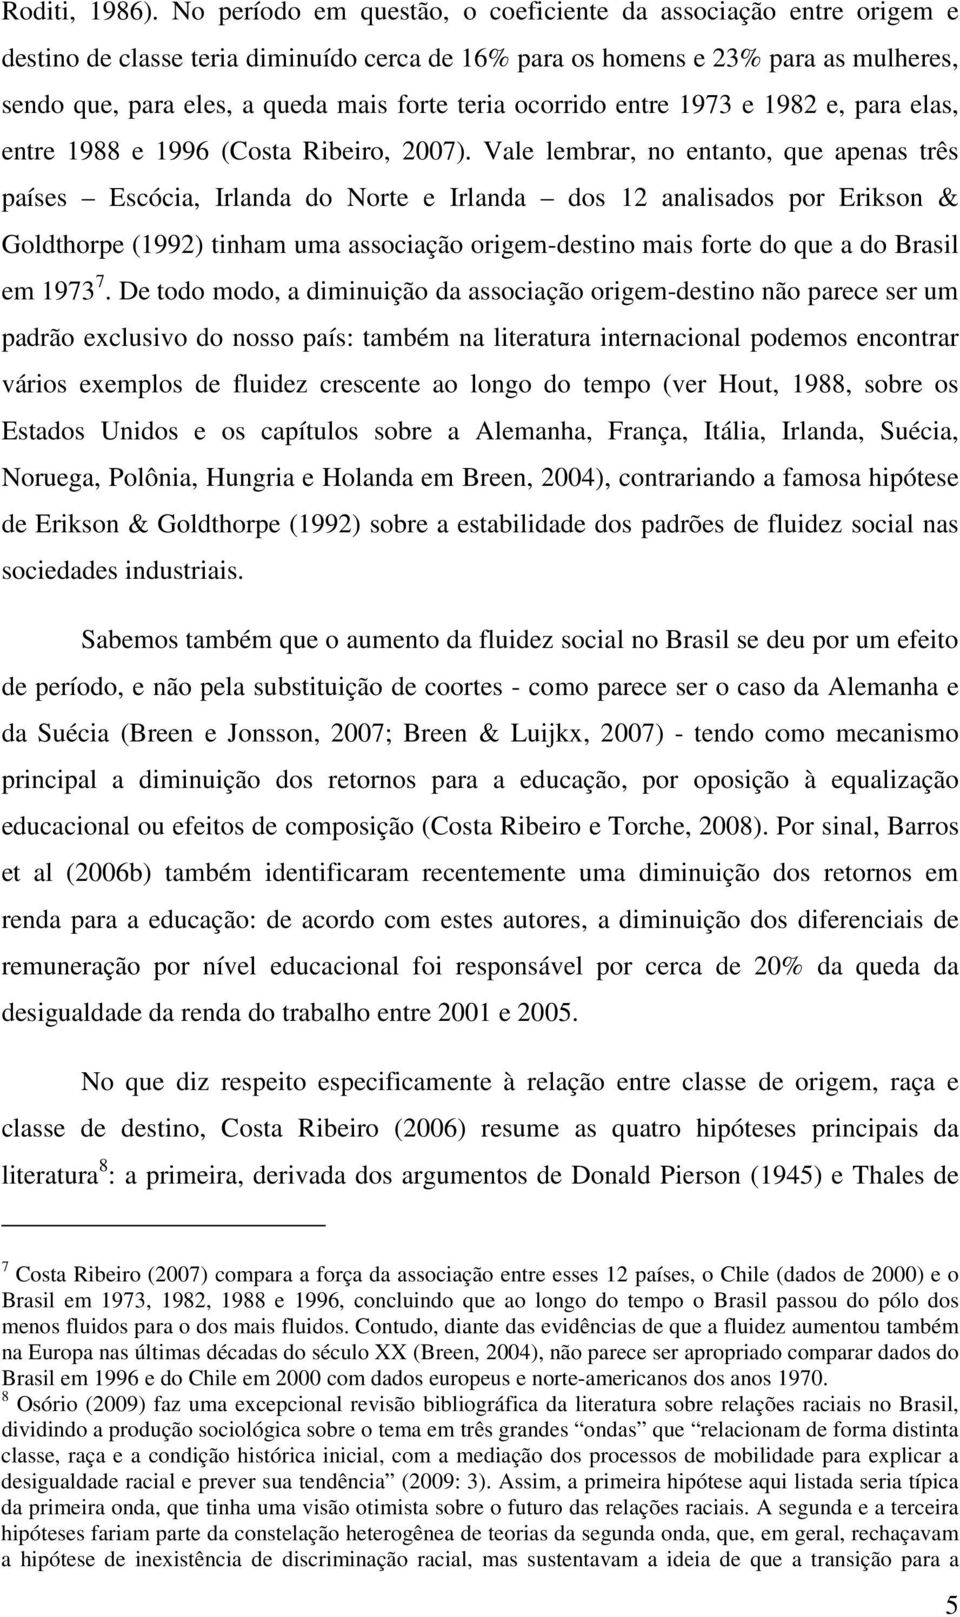 ocorrido entre 1973 e 1982 e, para elas, entre 1988 e 1996 (Costa Ribeiro, 2007).